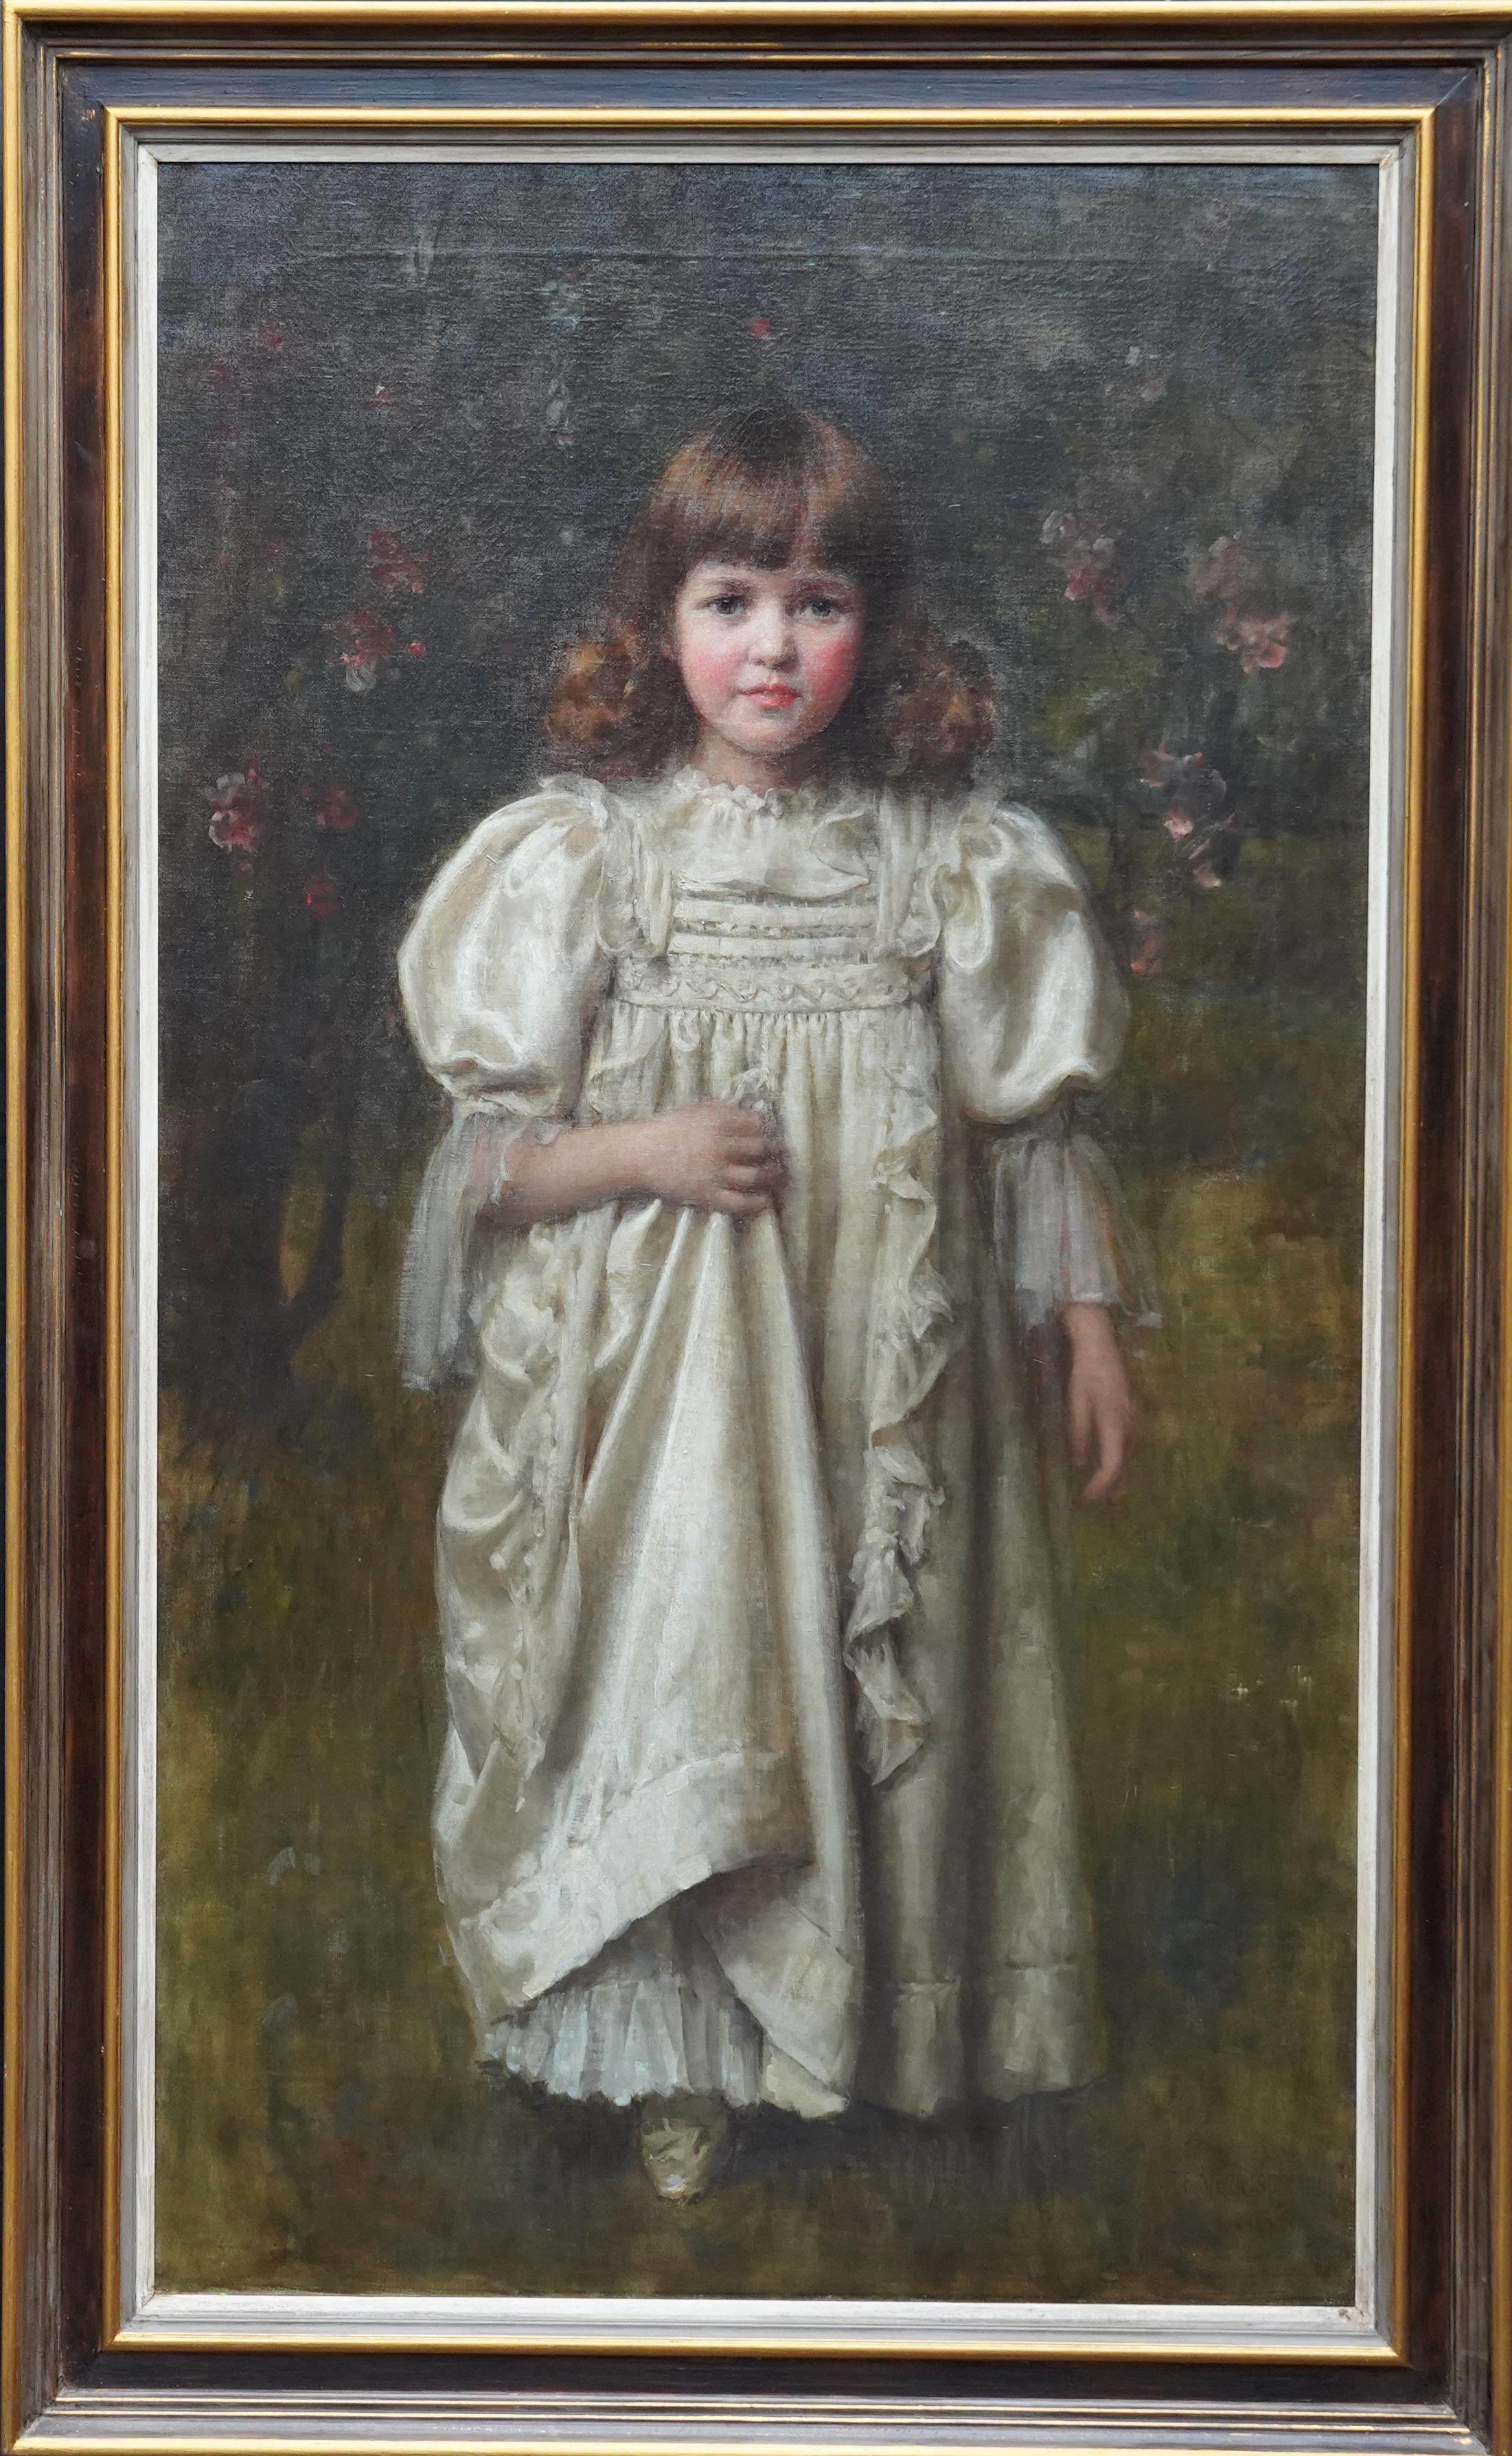 Portrait Painting Robert Edward Morrison - Portrait d'une jeune fille dans une robe blanche - Peinture à l'huile d'art édouardienne britannique